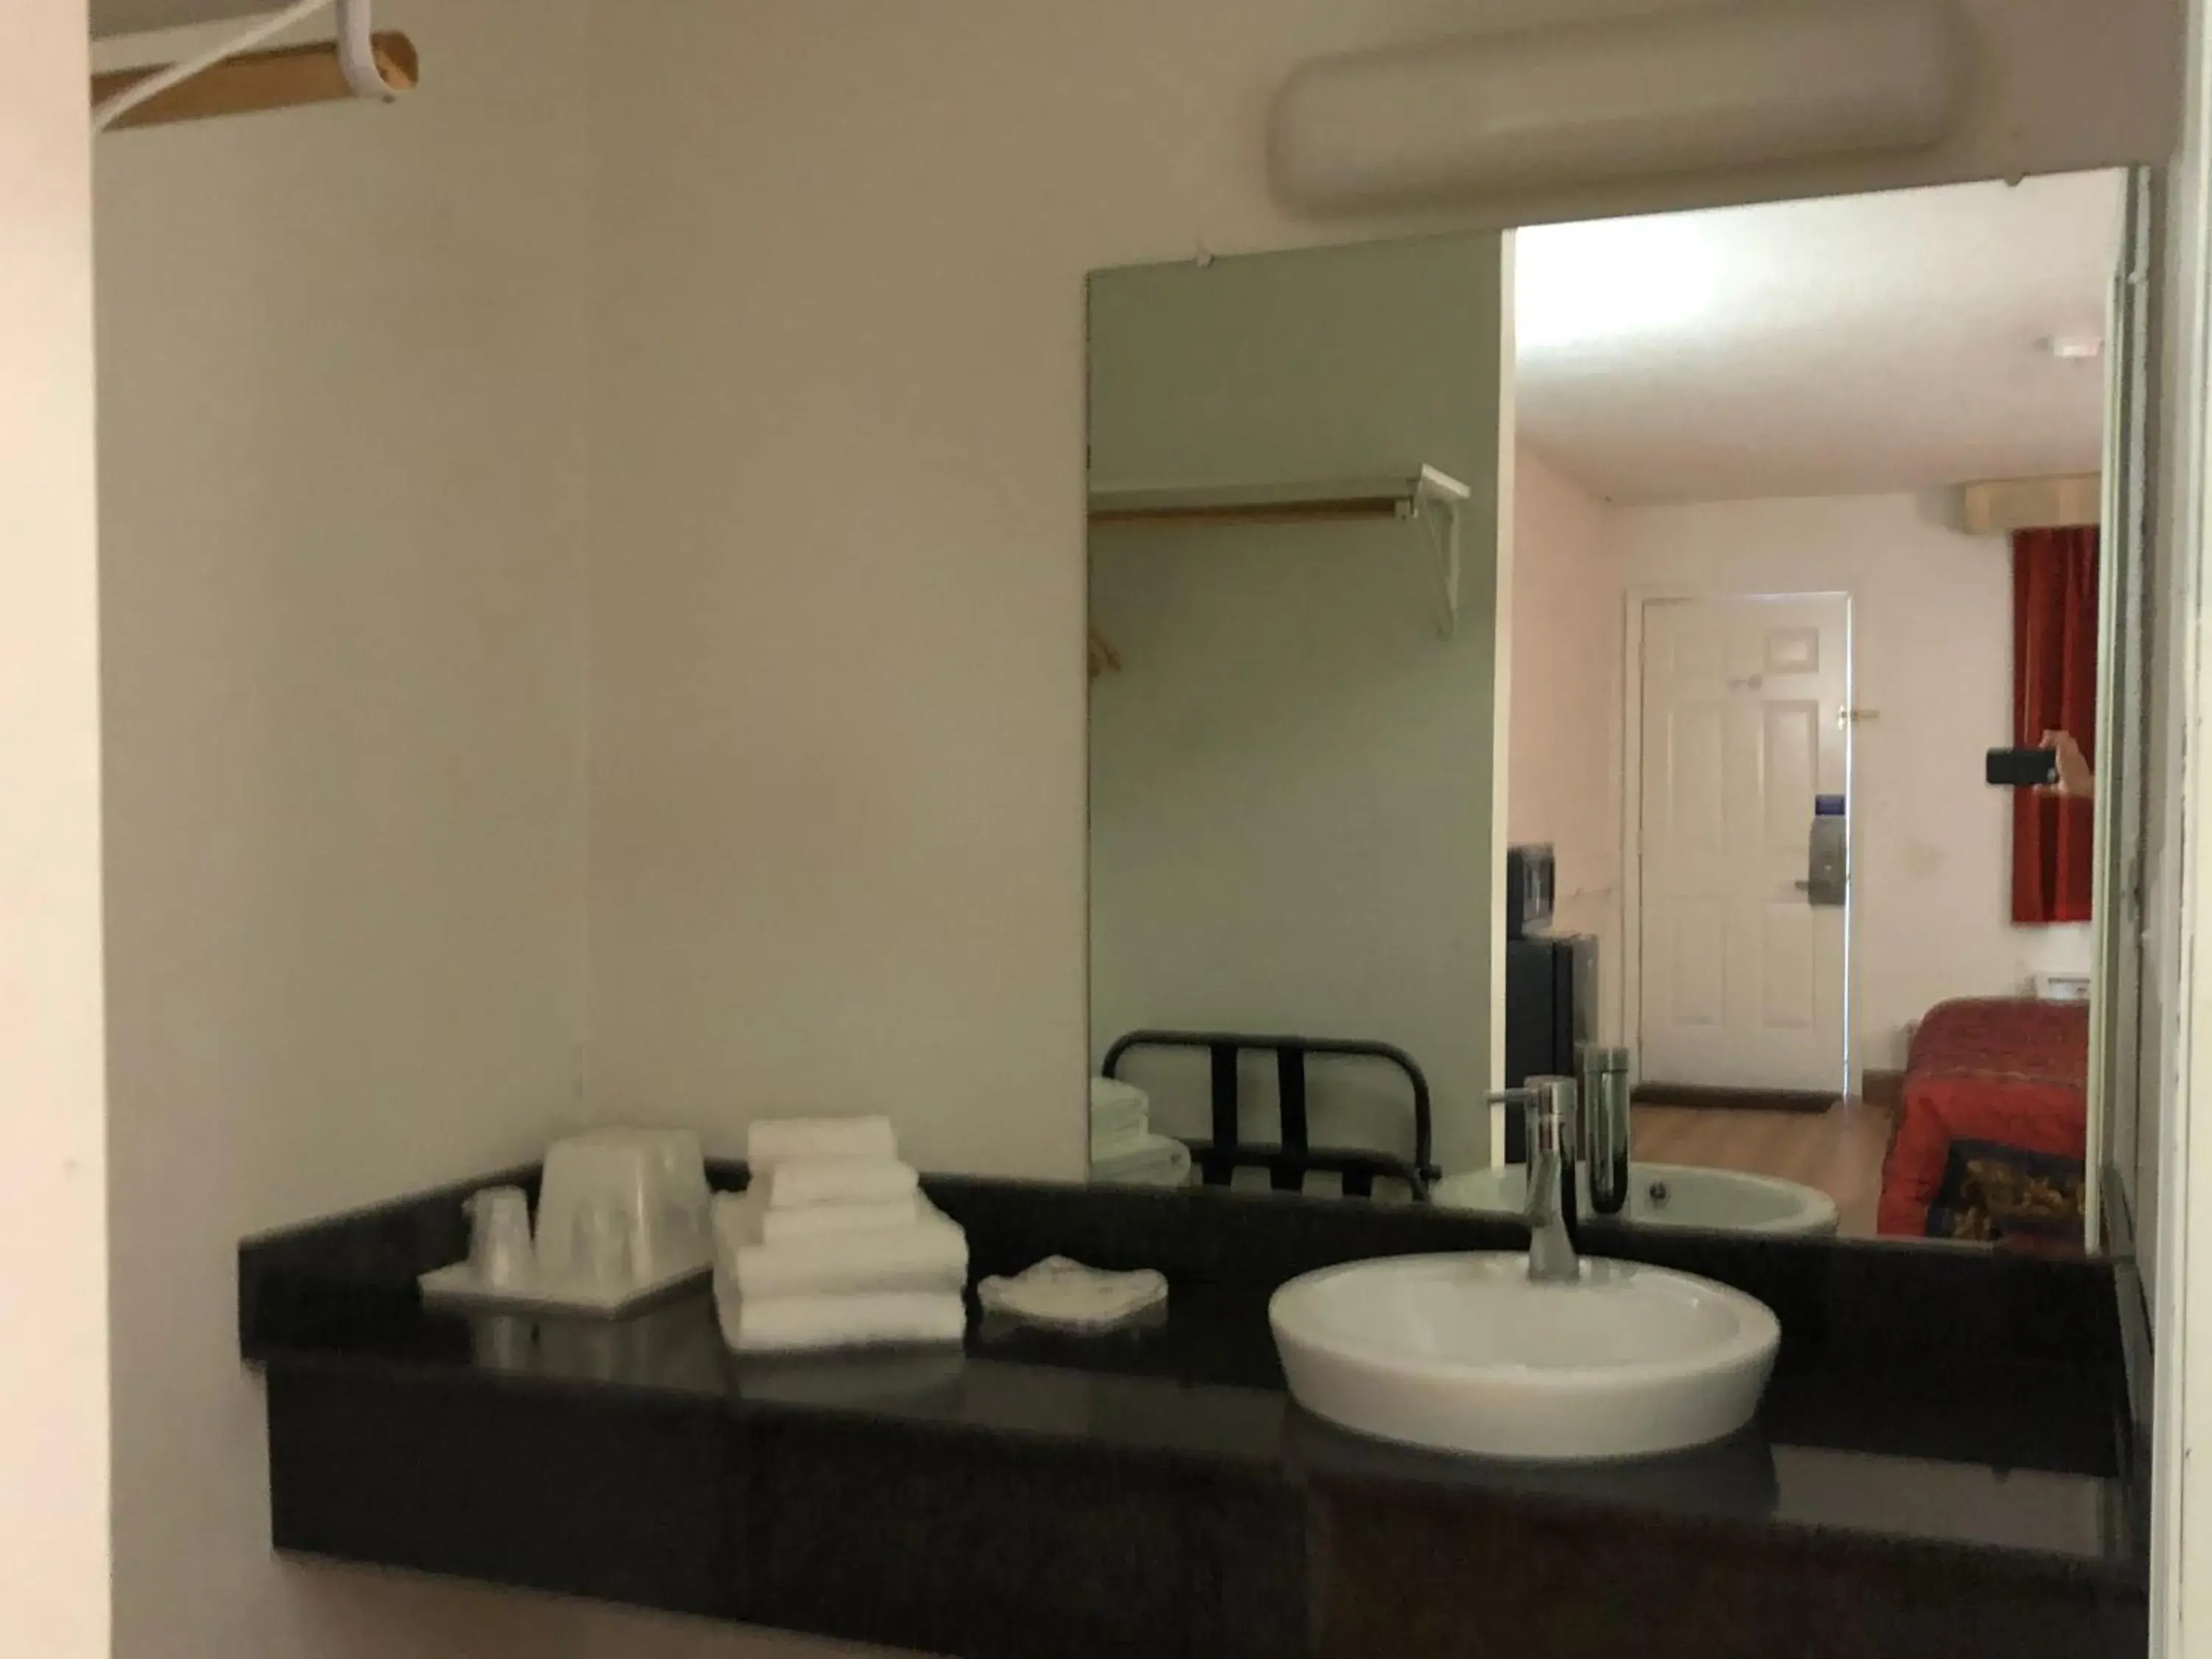 Bathroom in Motel 6-Rolla, MO